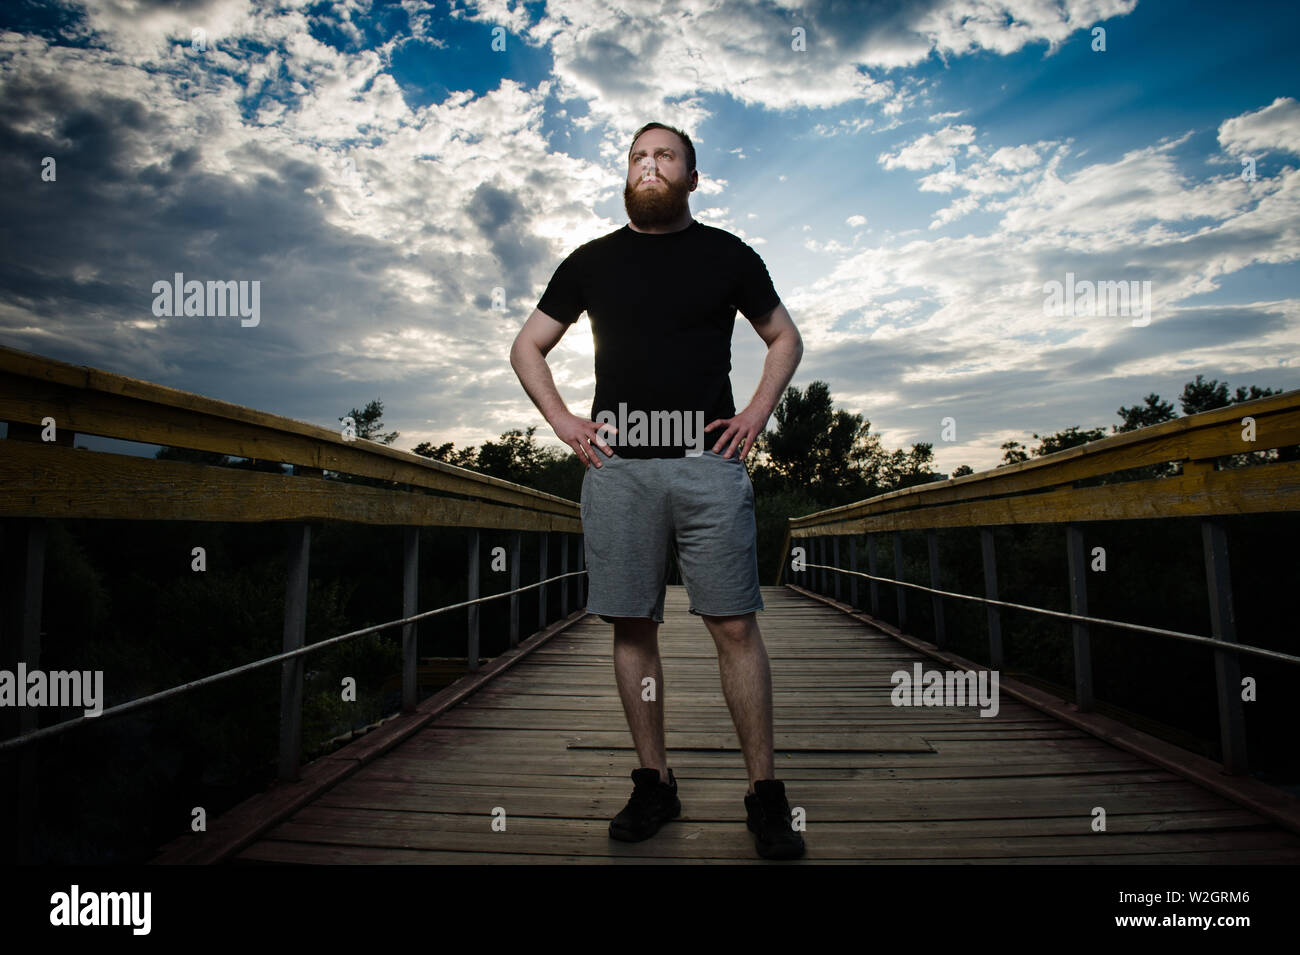 Dramatisches Bild der starken jungen Mann mit Bart in schwarzen T-Shirt und graue Shorts stehen auf Holz Brücke im Park mit Sonnenuntergang Himmel mit Wolken Stockfoto